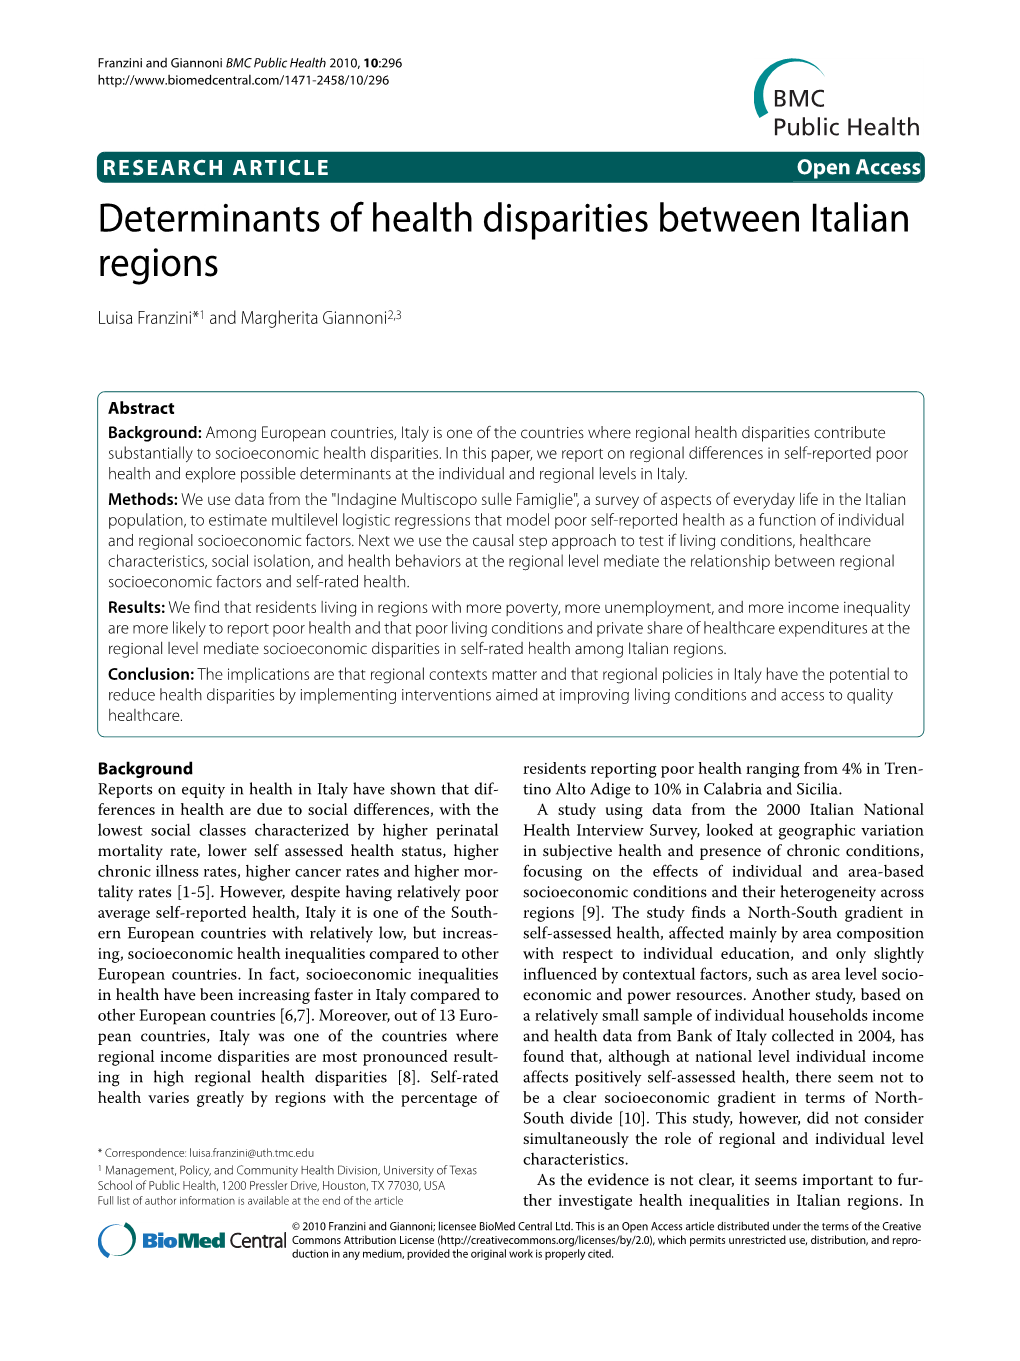 Determinants of Health Disparities Between Italian Regions